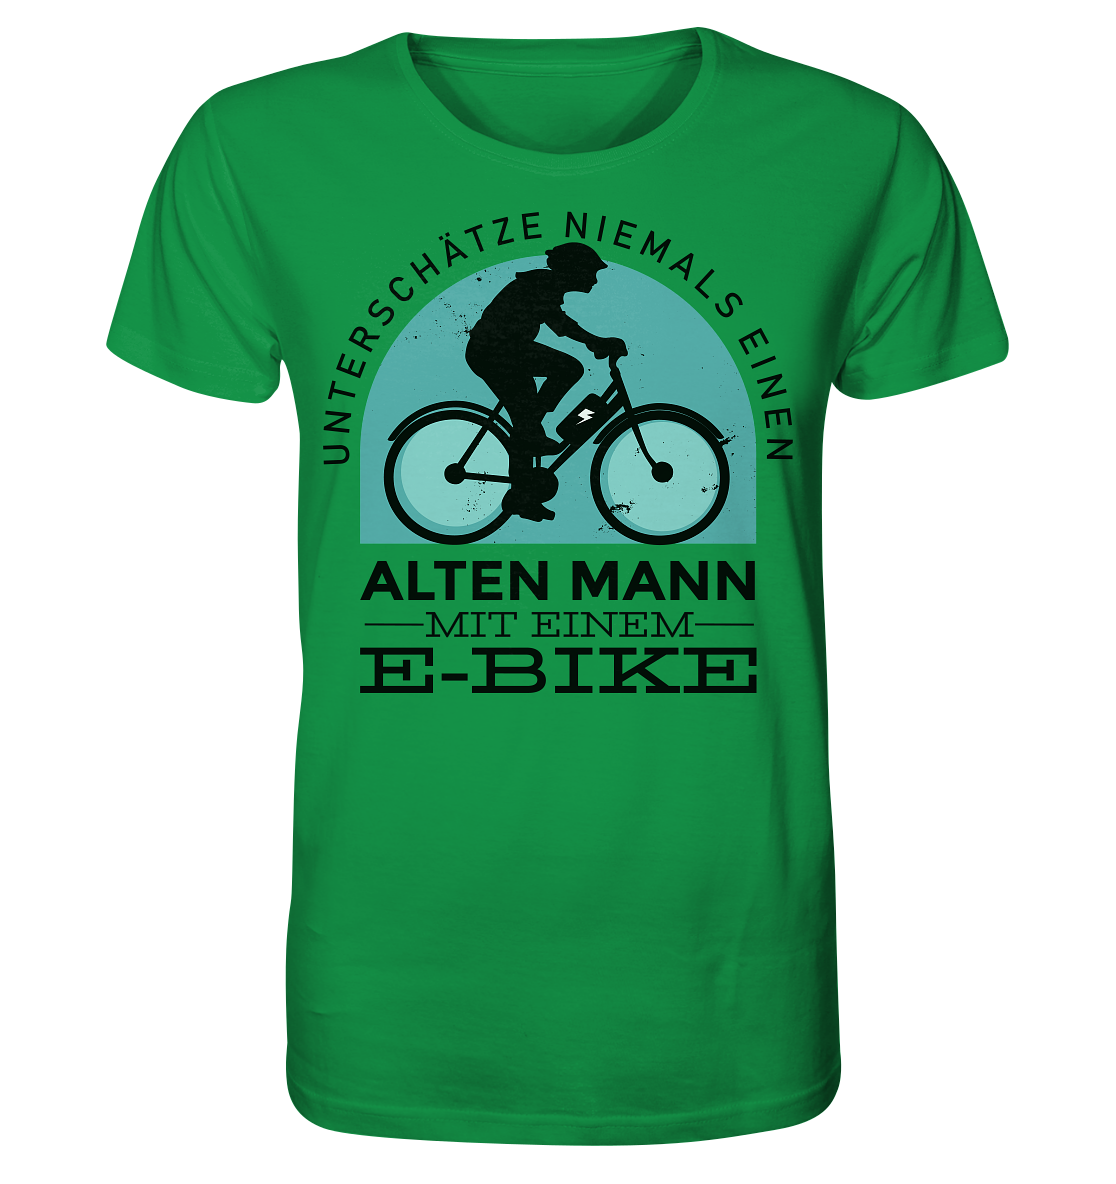 Alten Mann mit einem E-Bike - Organic Shirt